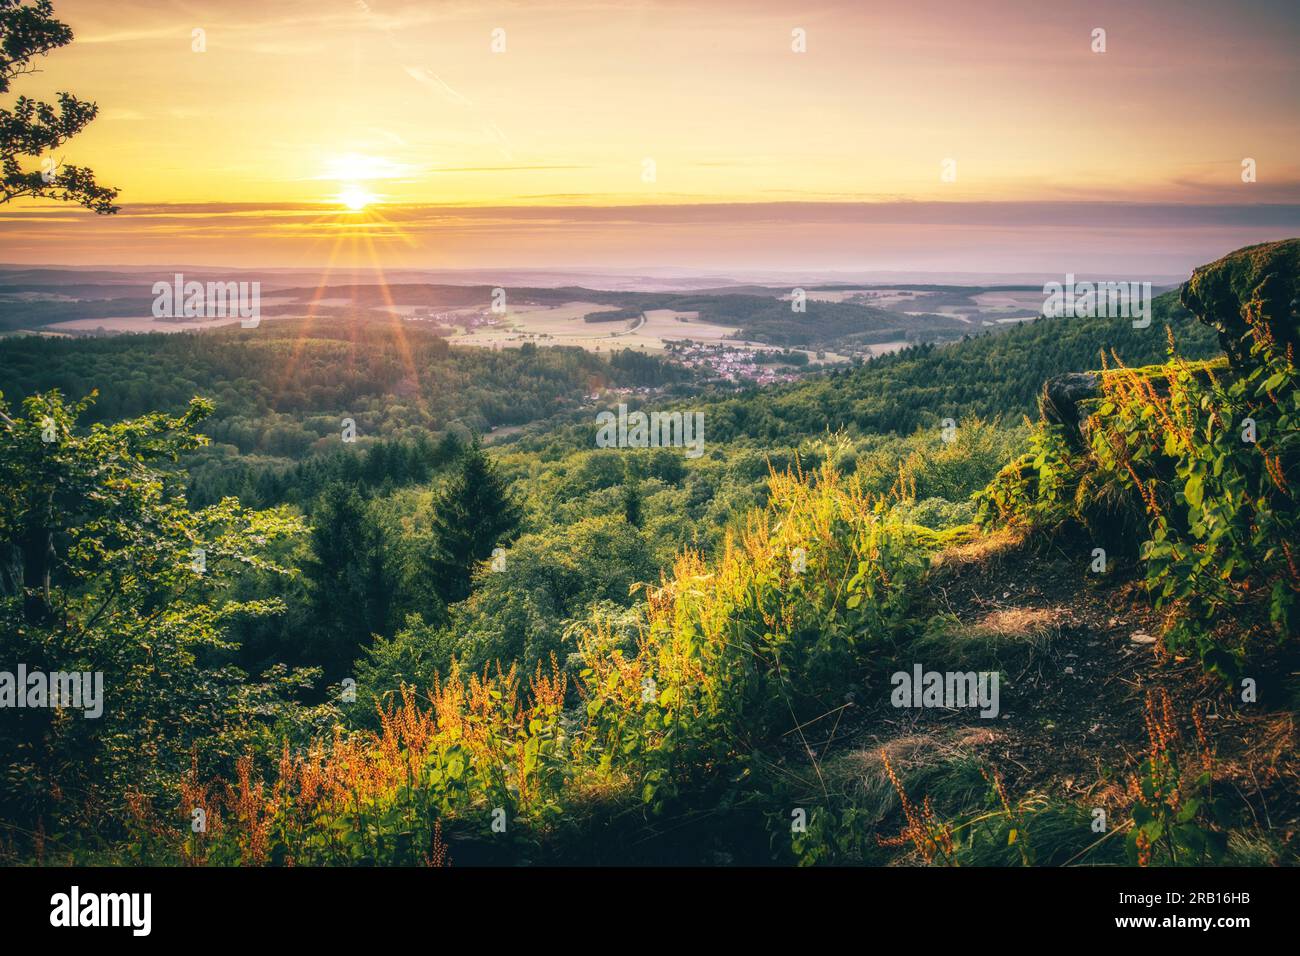 Splendida vista dalle cime di Pfälzerwald, pittoresca vista di un paesaggio con molta natura, colline, foresta e un'alba dai bellissimi colori caldi, Renania-Palatinato, Germania Foto Stock